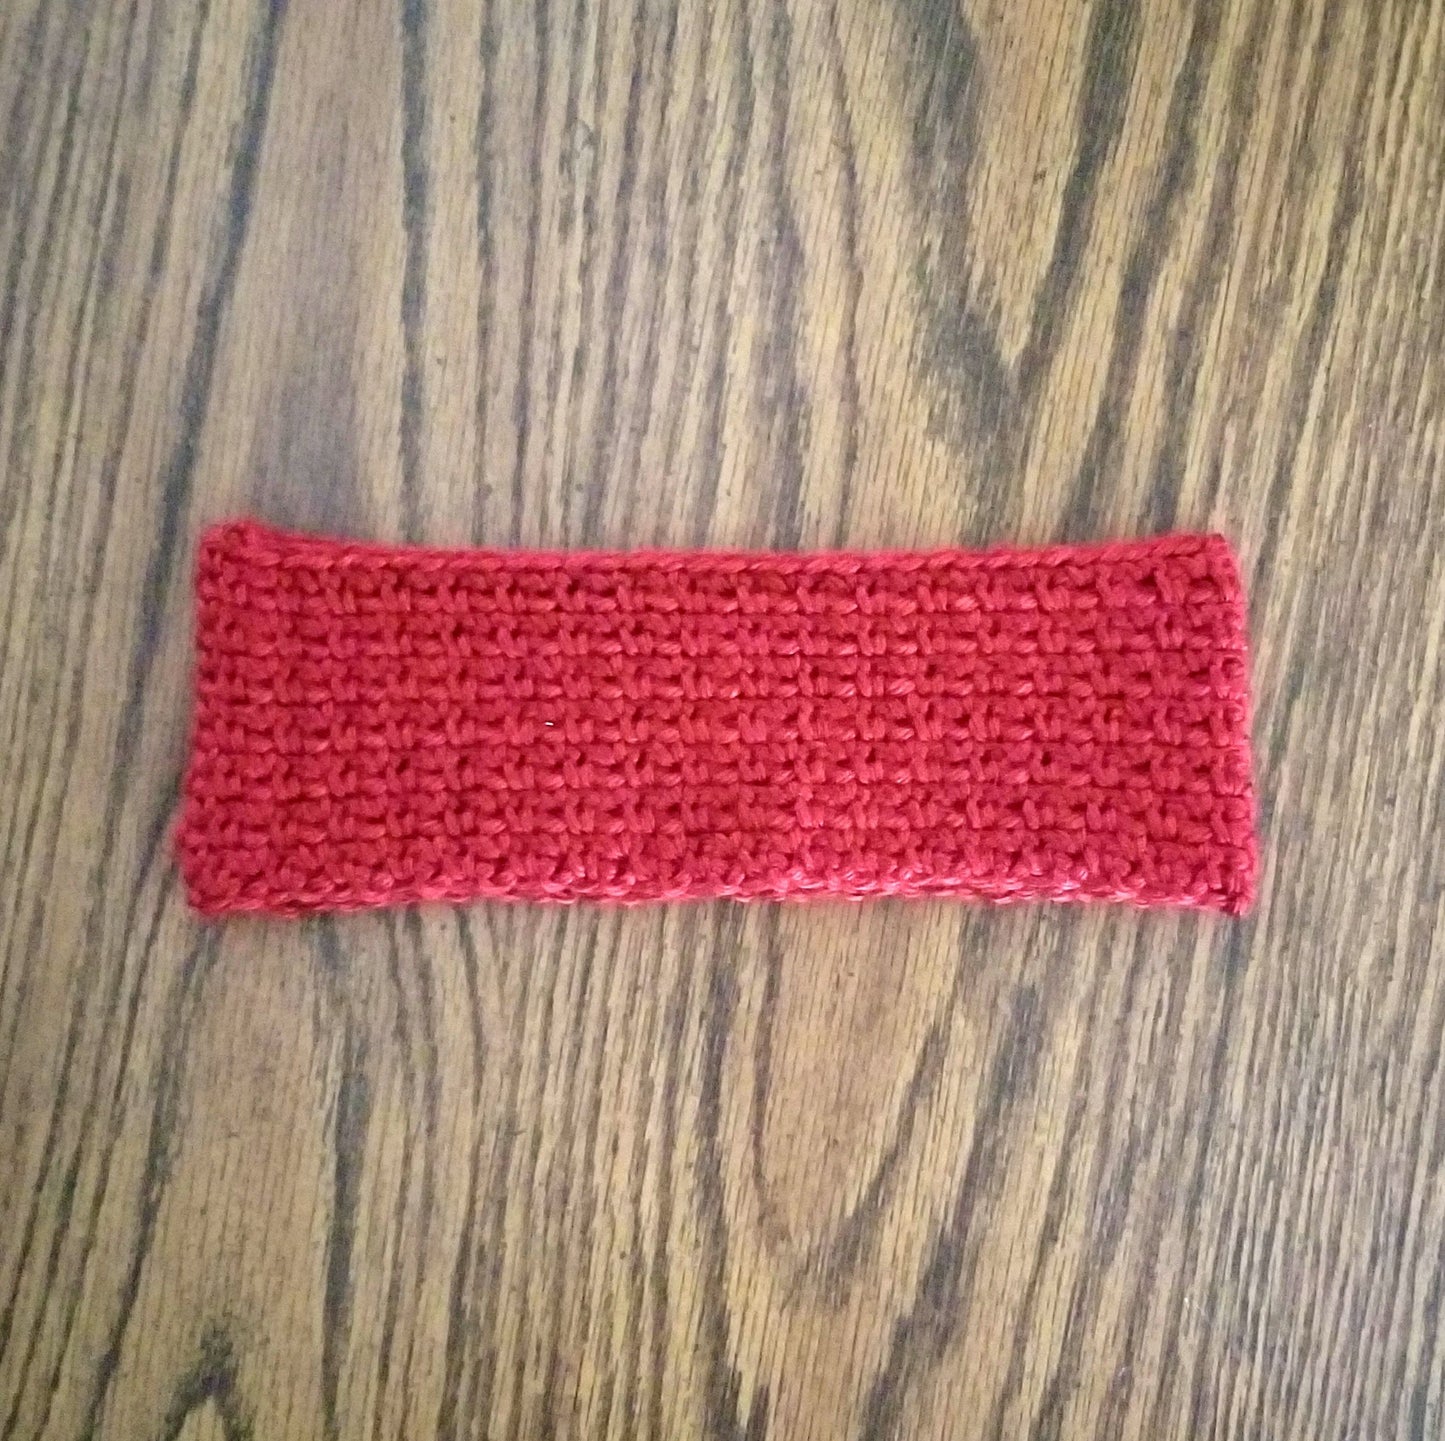 Woven Earwarmer Crochet Pattern PDF